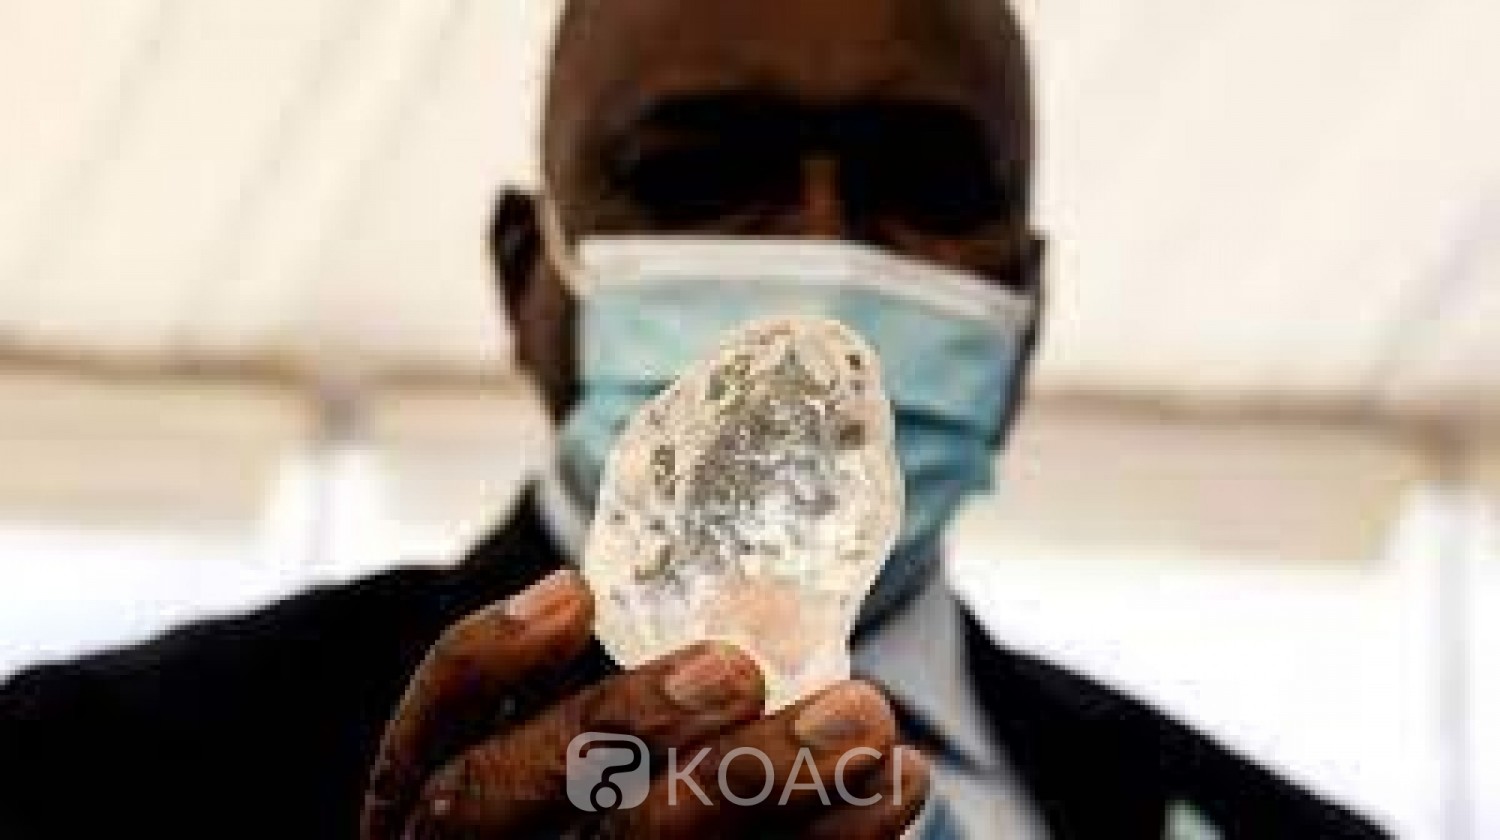 Botswana : Découverte du troisième plus gros diamant au monde